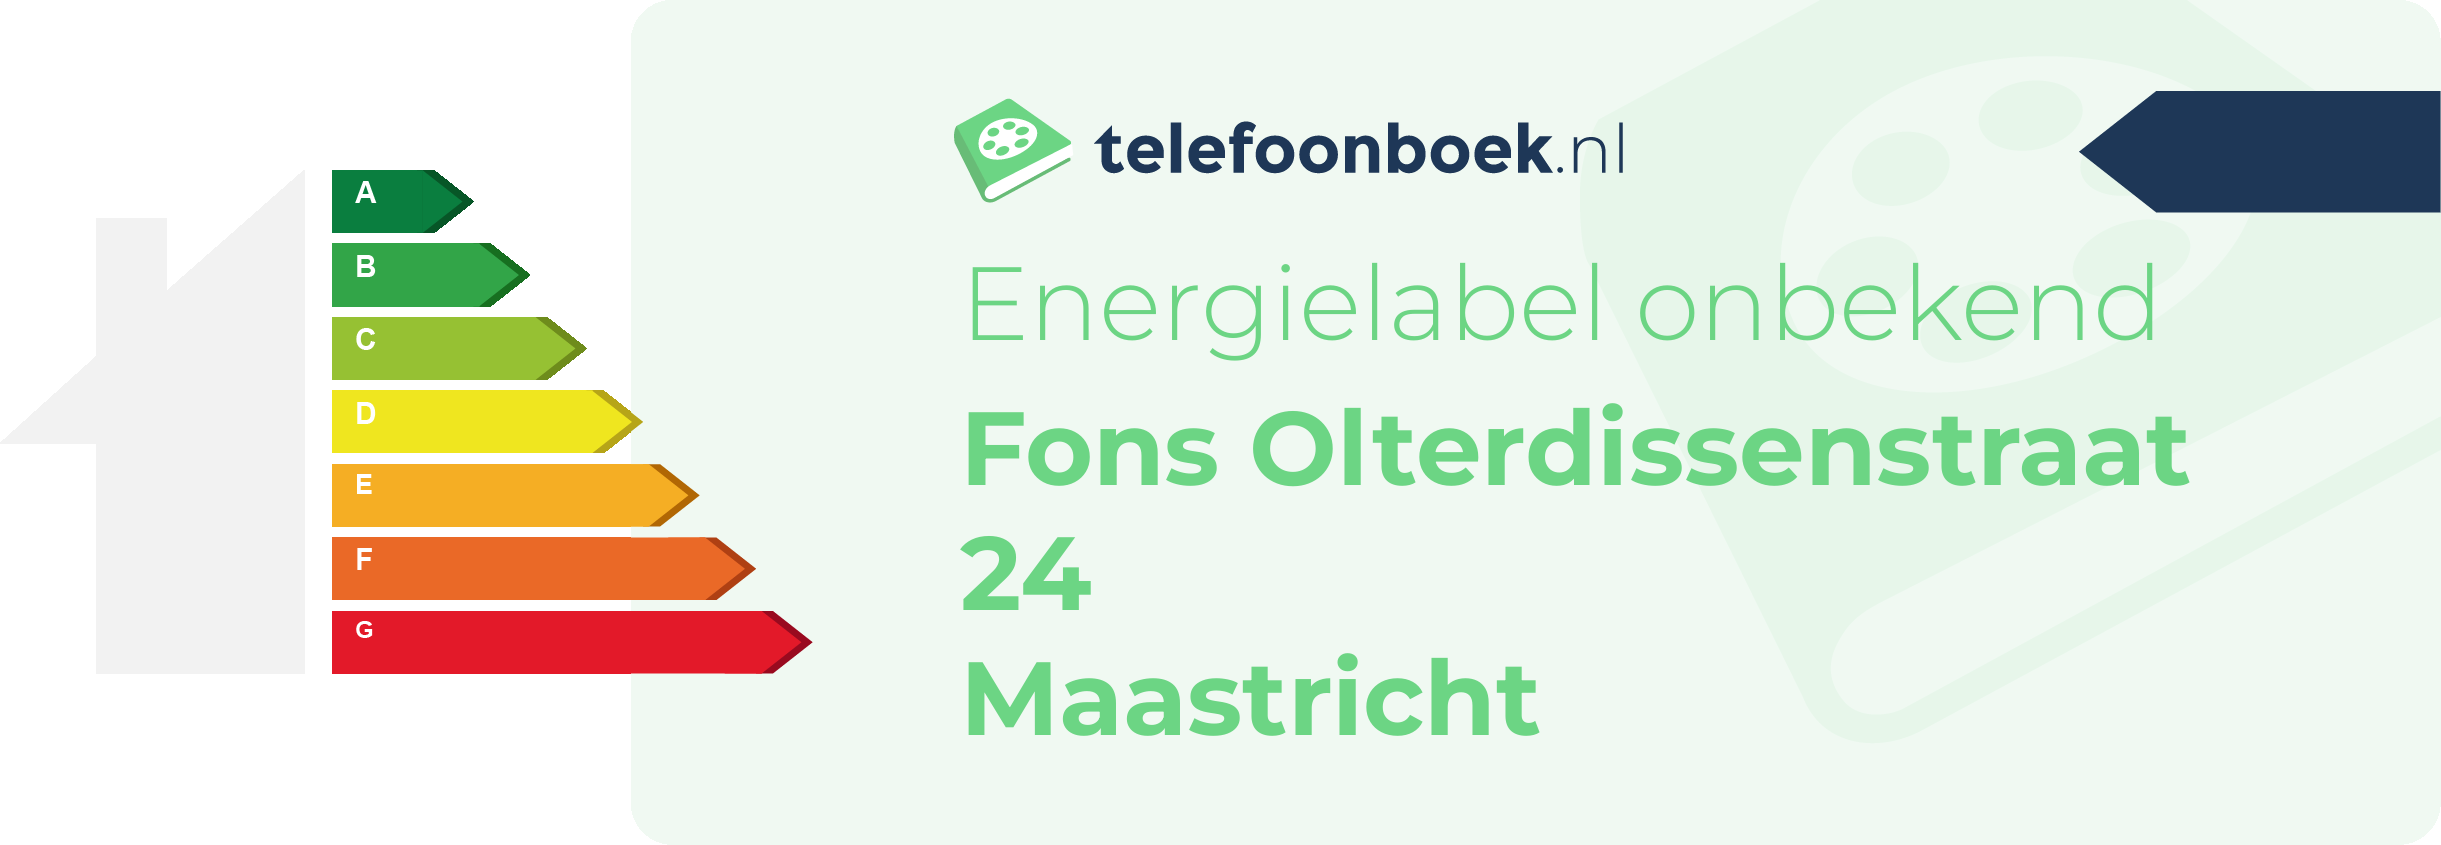 Energielabel Fons Olterdissenstraat 24 Maastricht